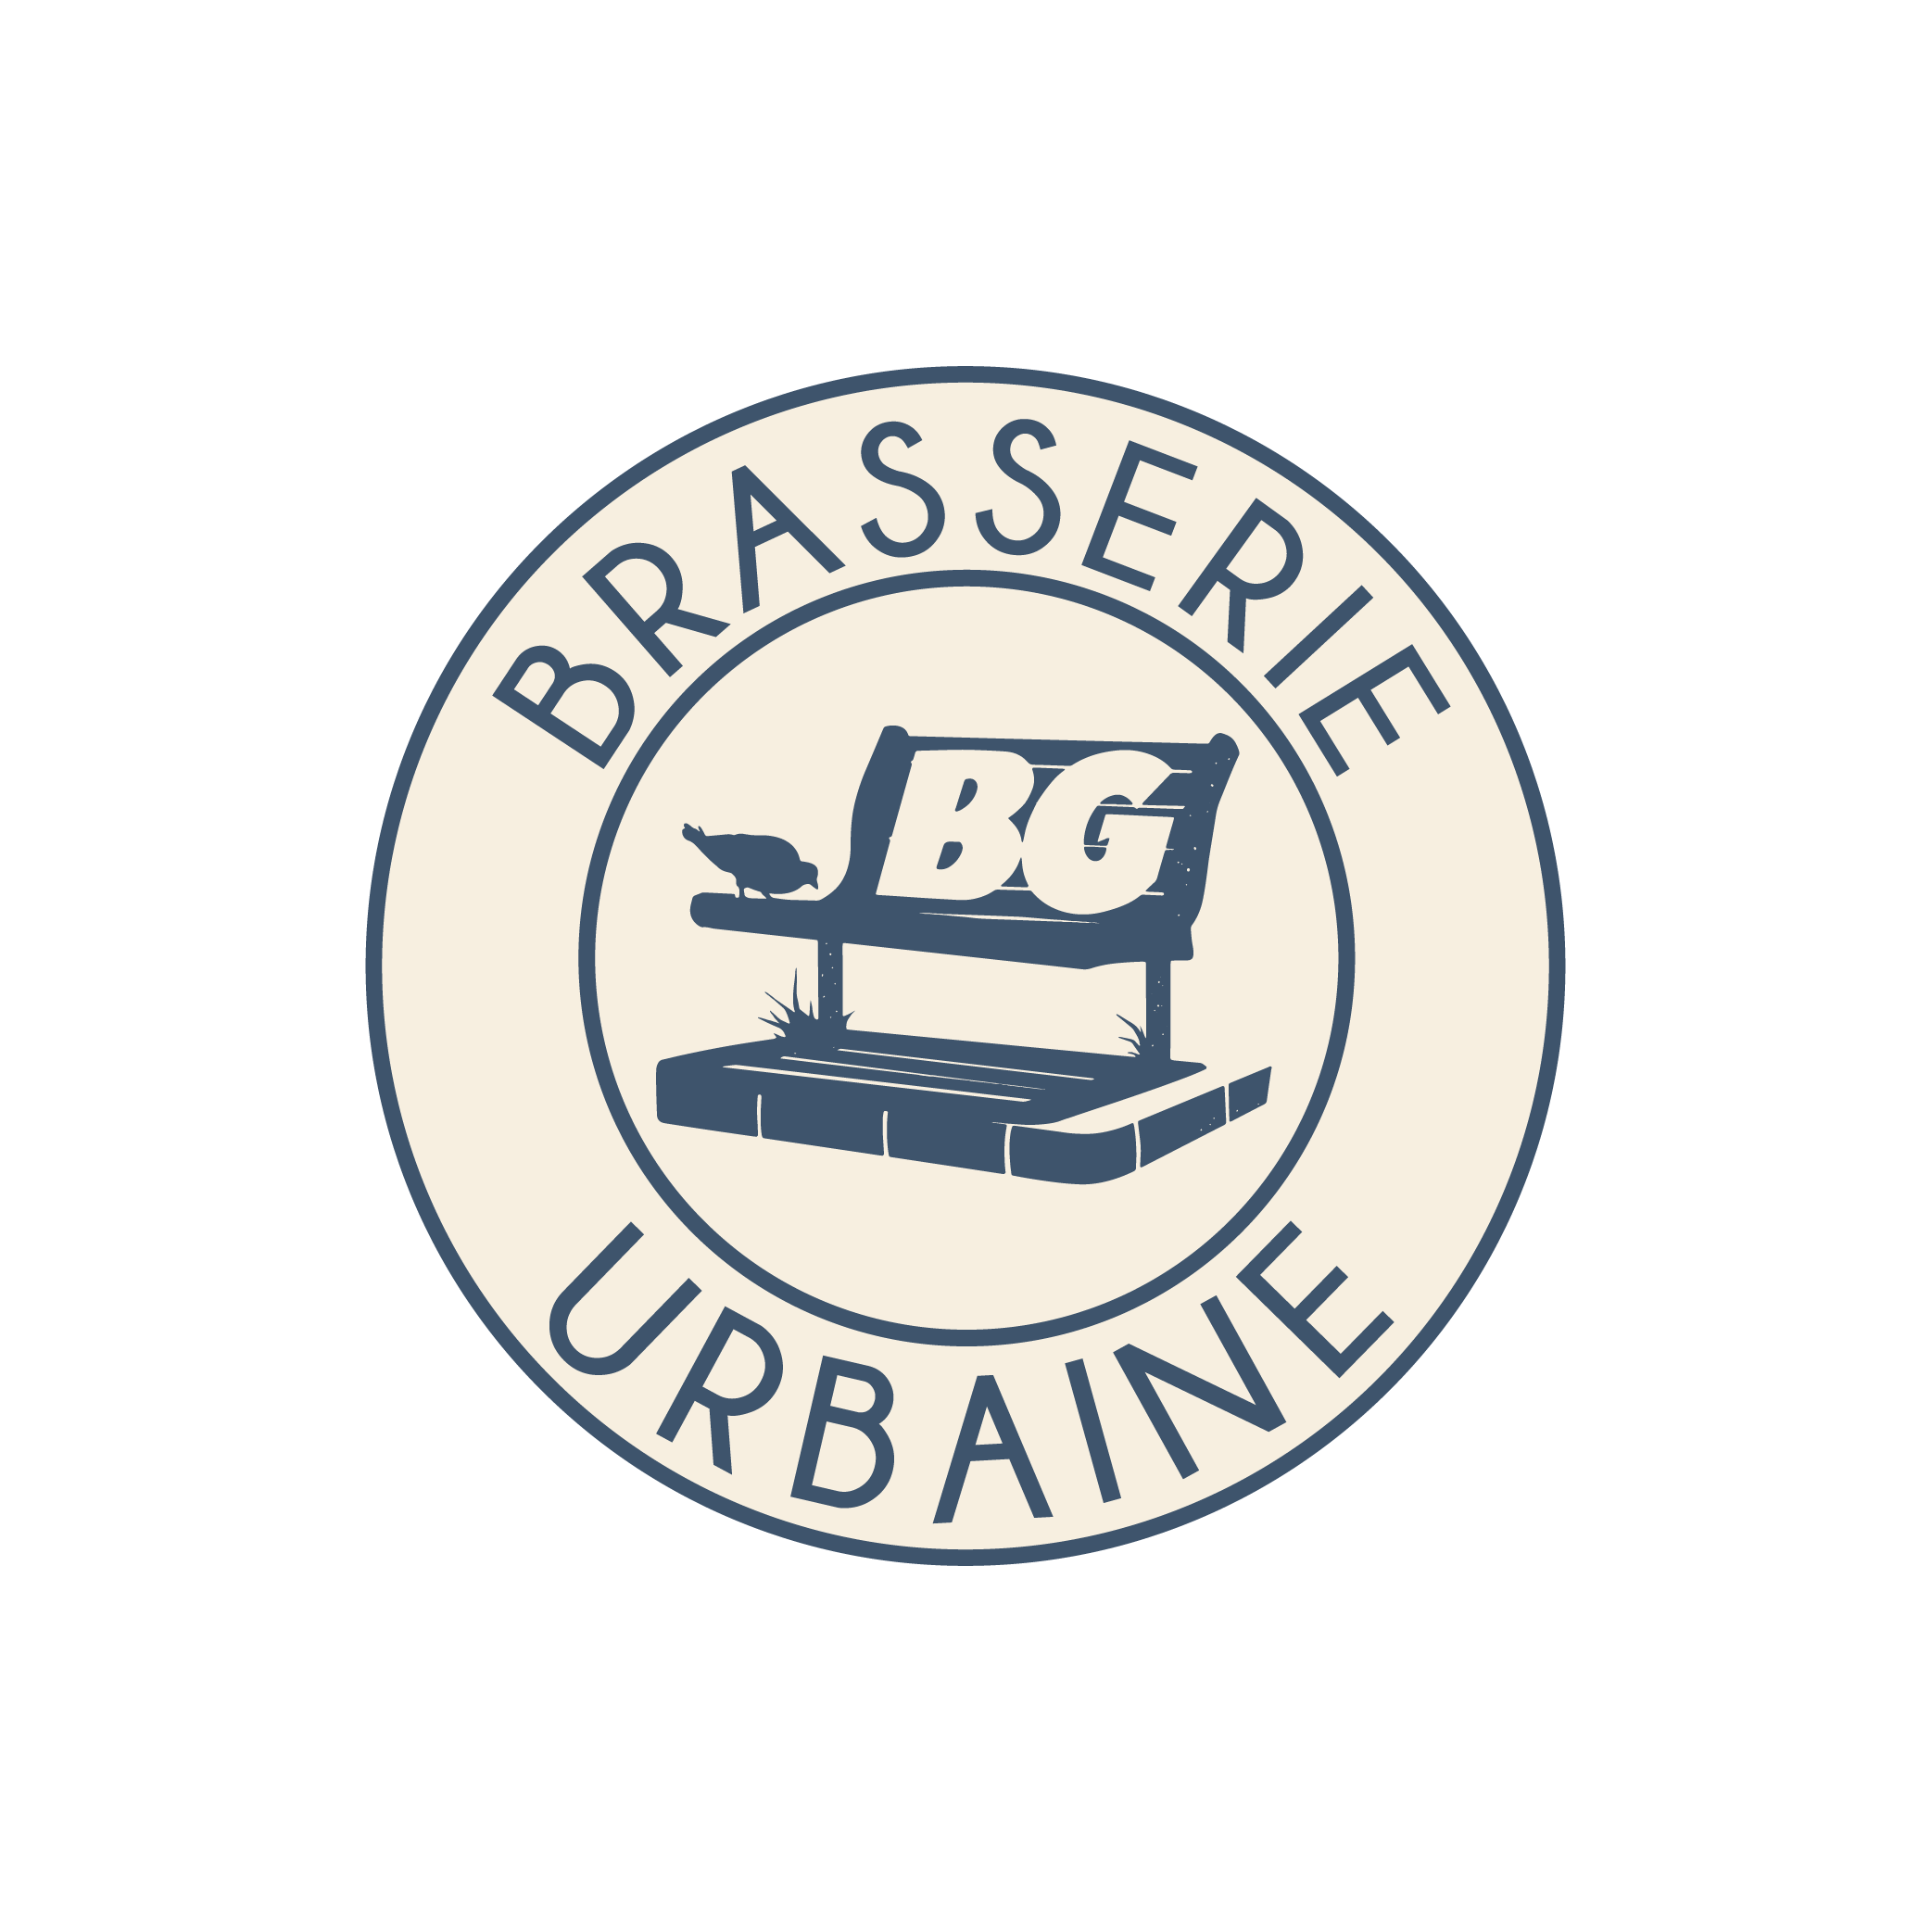 BG Brasserie Urbaine